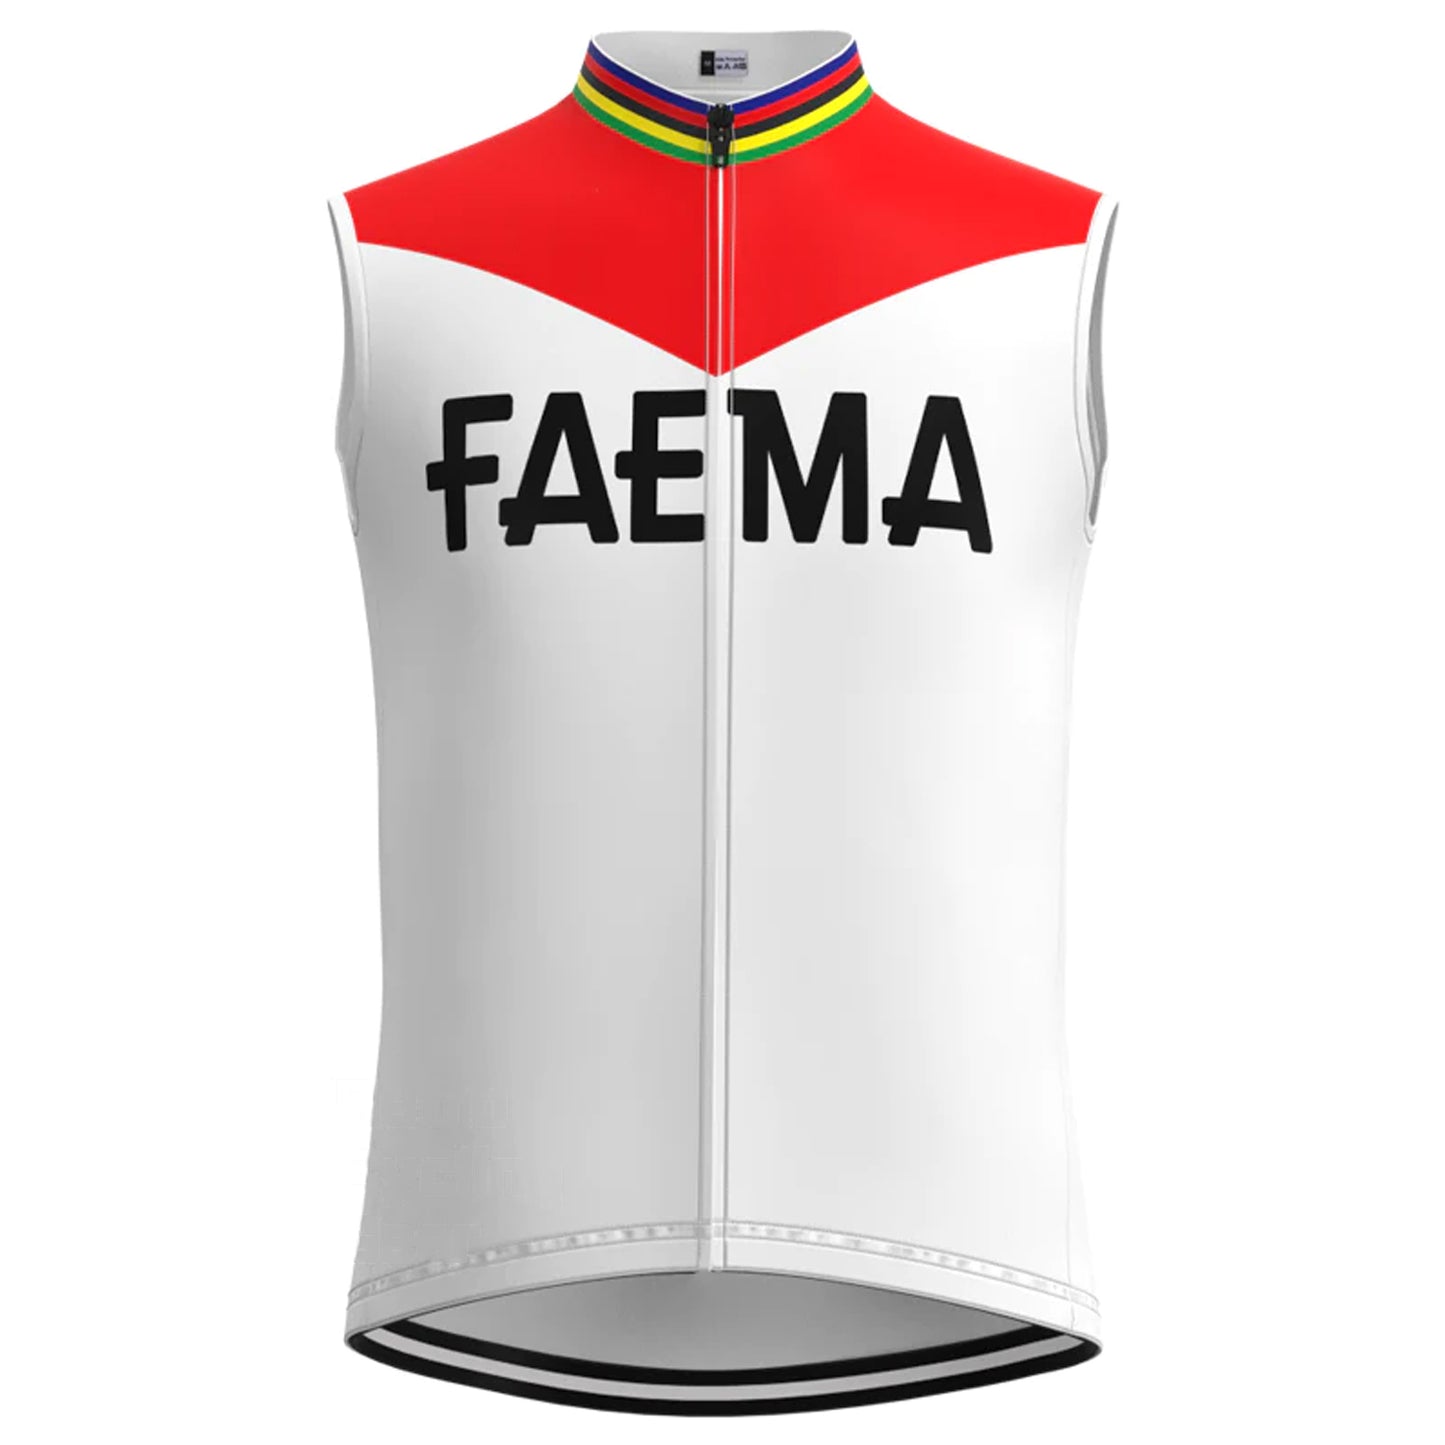 FAEMA Red White Retro MTB Cycling Vest